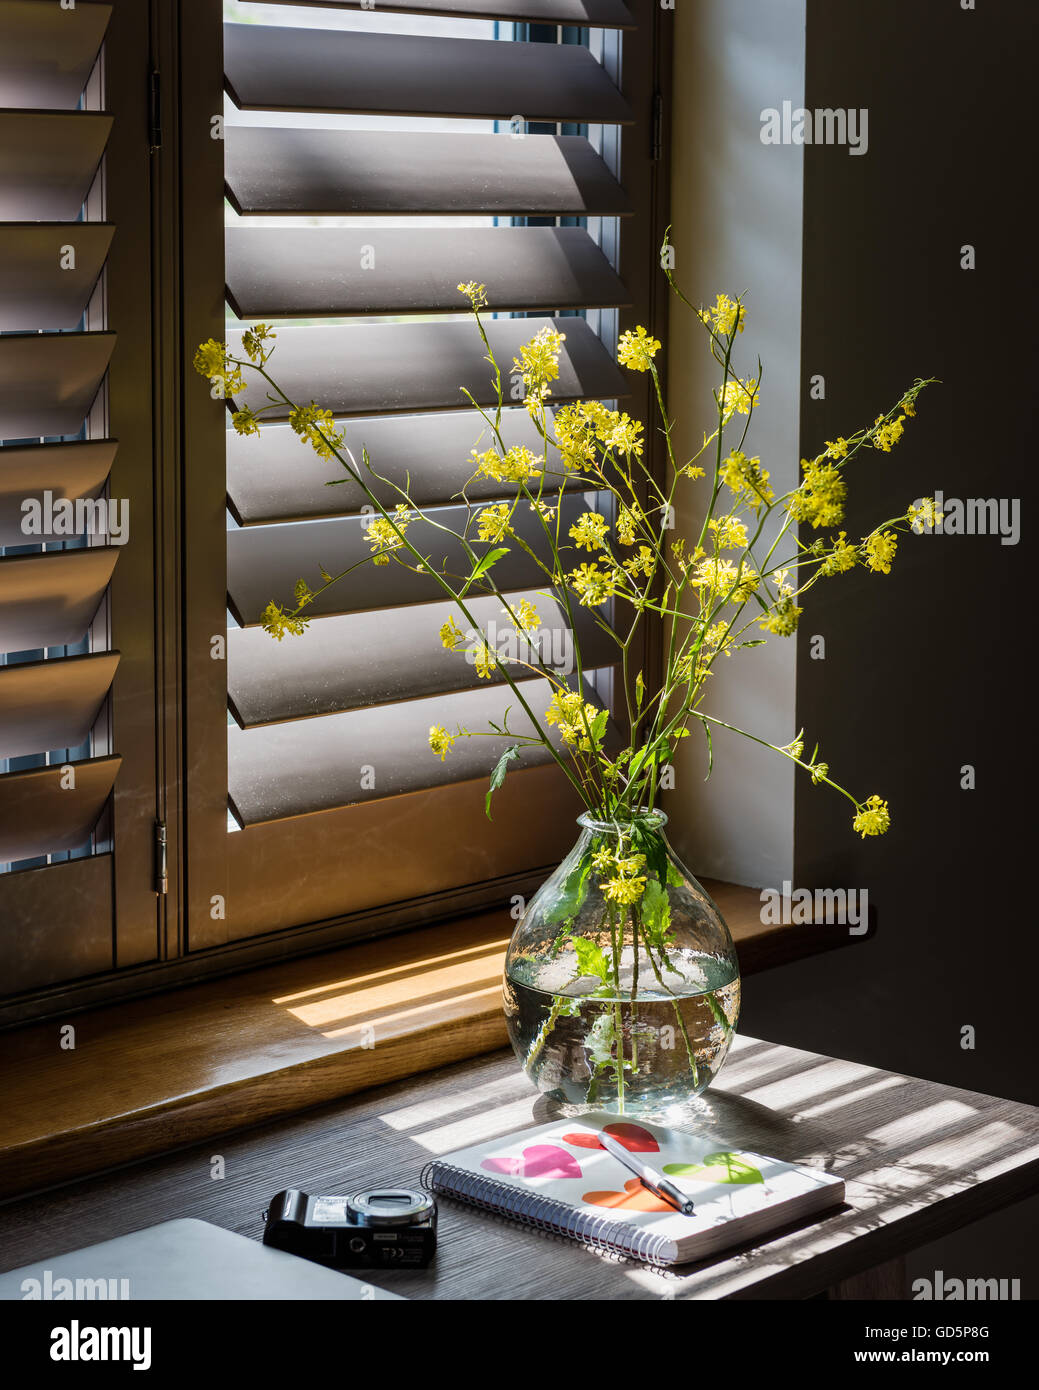 Detalle de jarrón con ramitas de flores amarillas con persianas de madera en segundo plano. Foto de stock